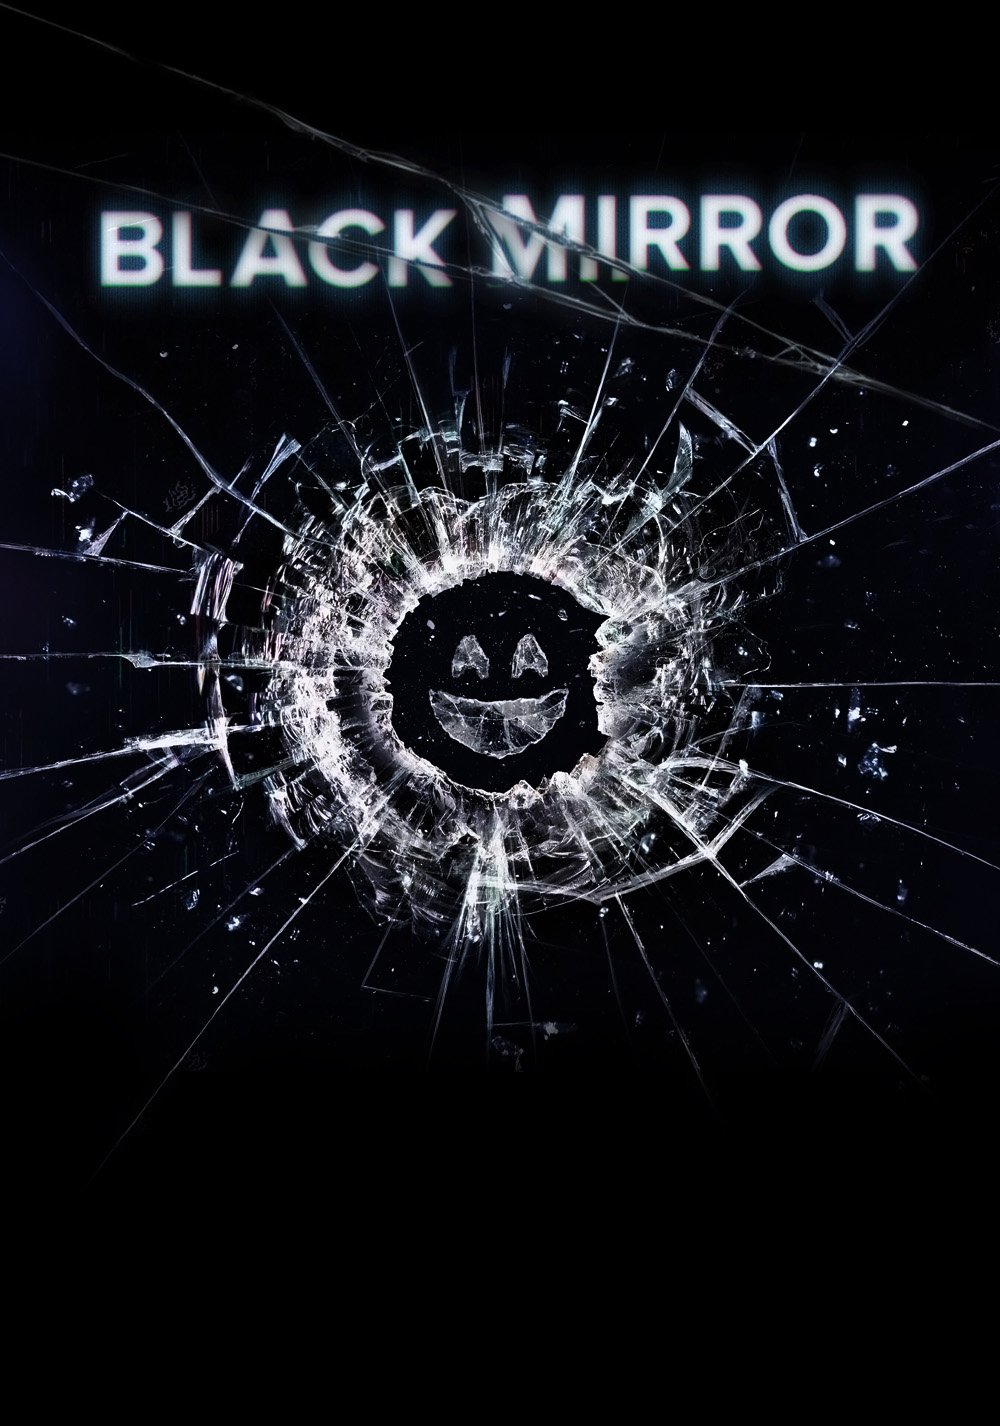 შავი სარკე სეზონი 3 / Black Mirror Season 3 ქართულად